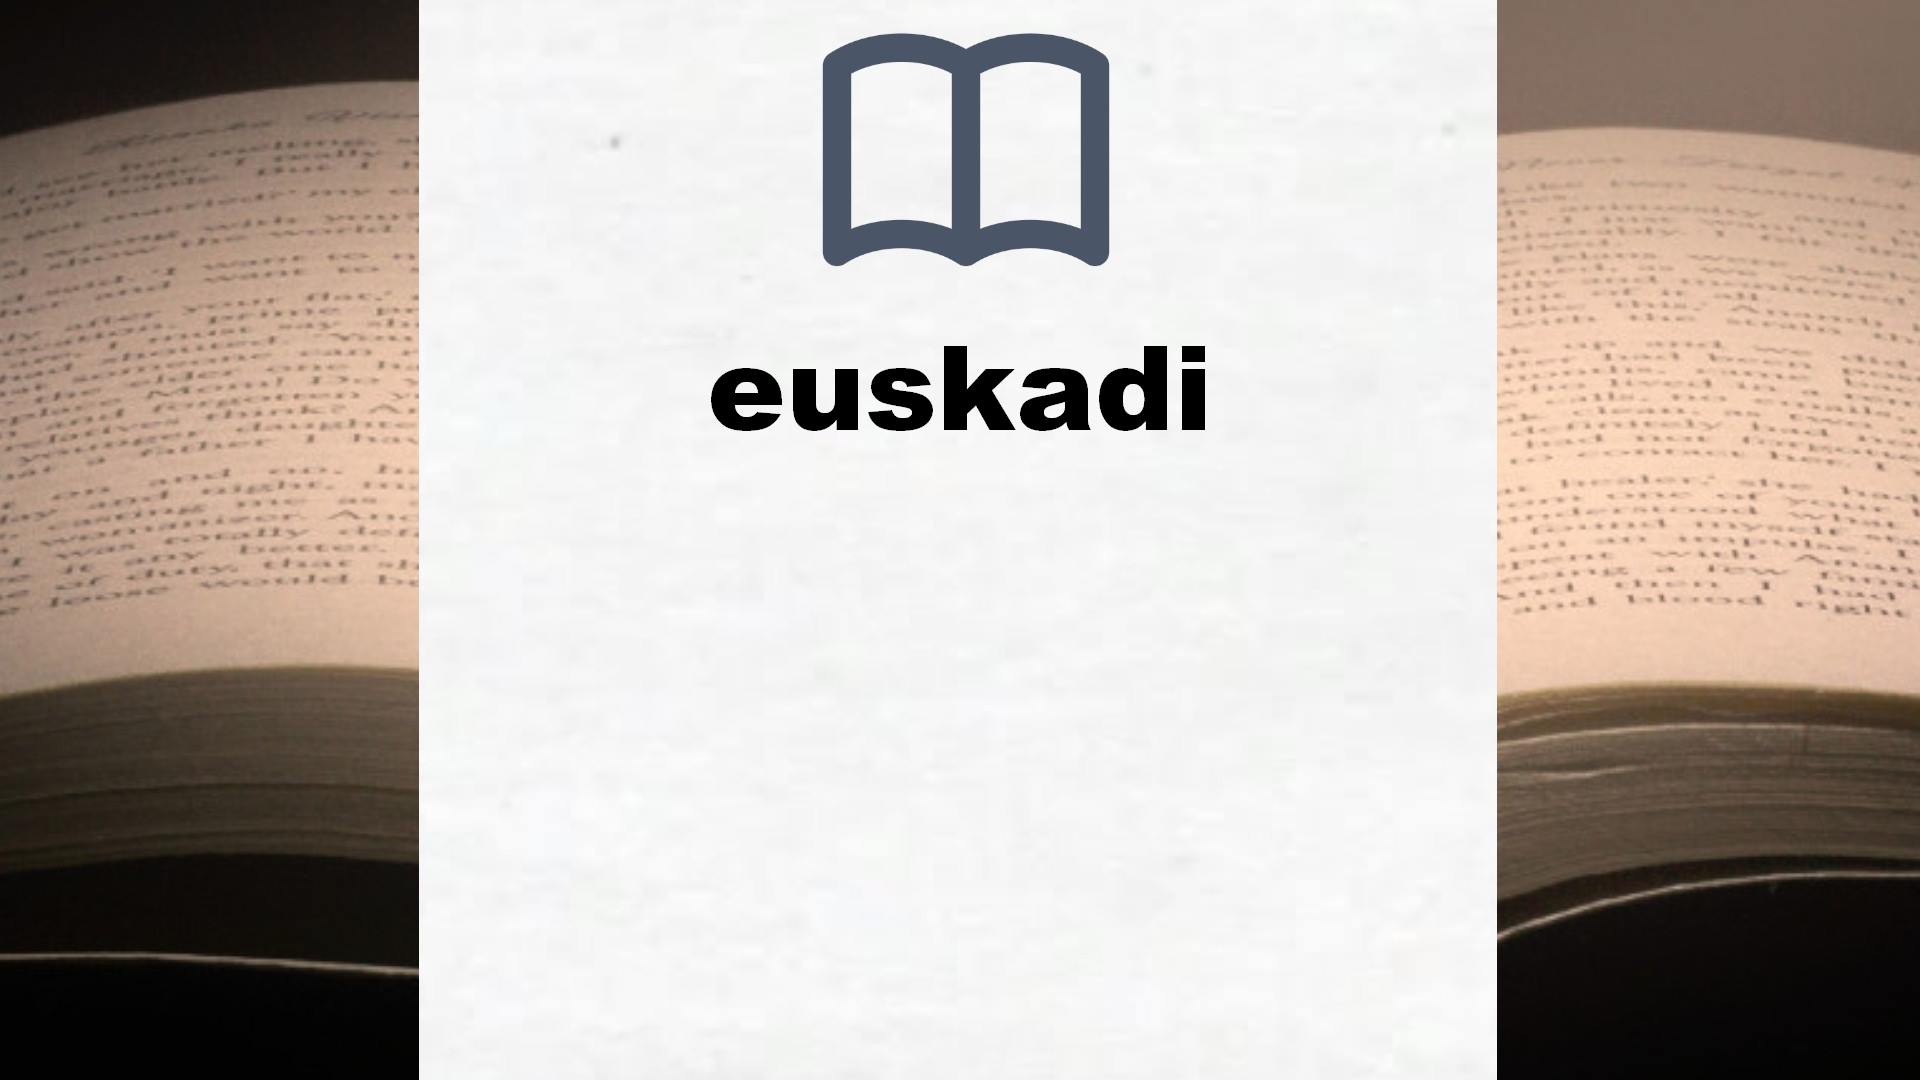 Libros sobre euskadi